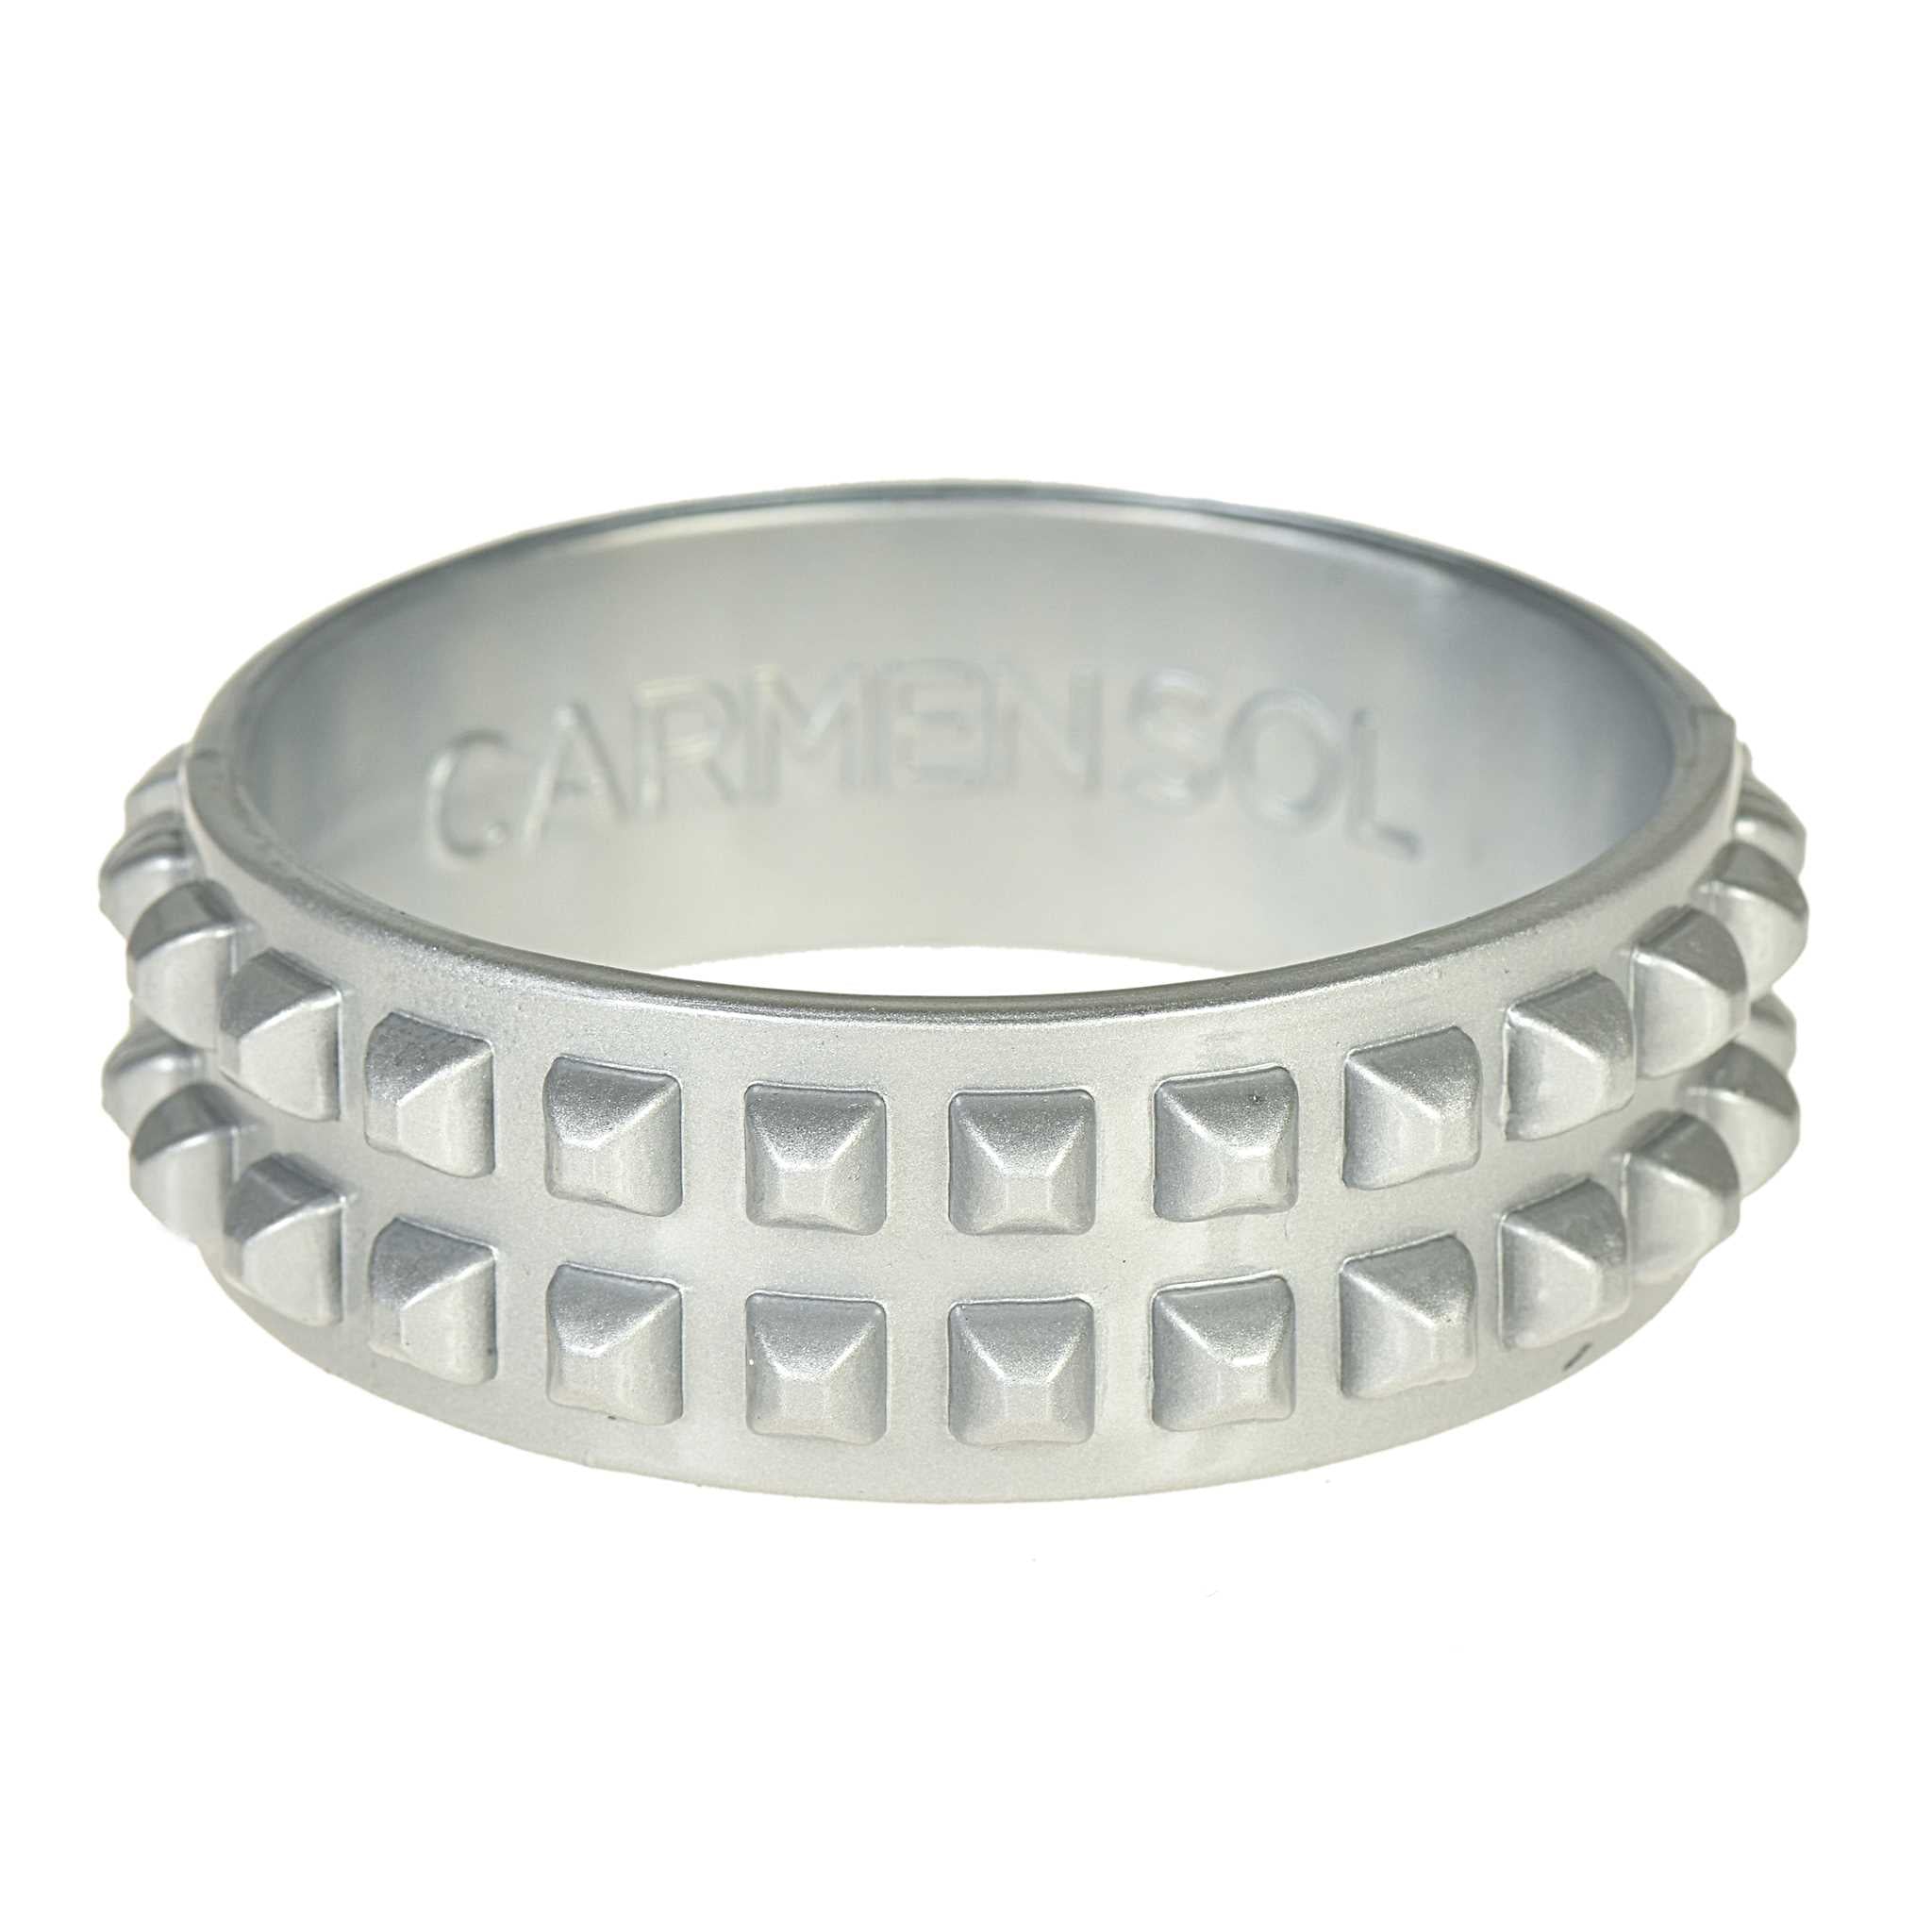 Shop Borchia metallic jelly bracelets, | Carmen Sol - Carmensol.com